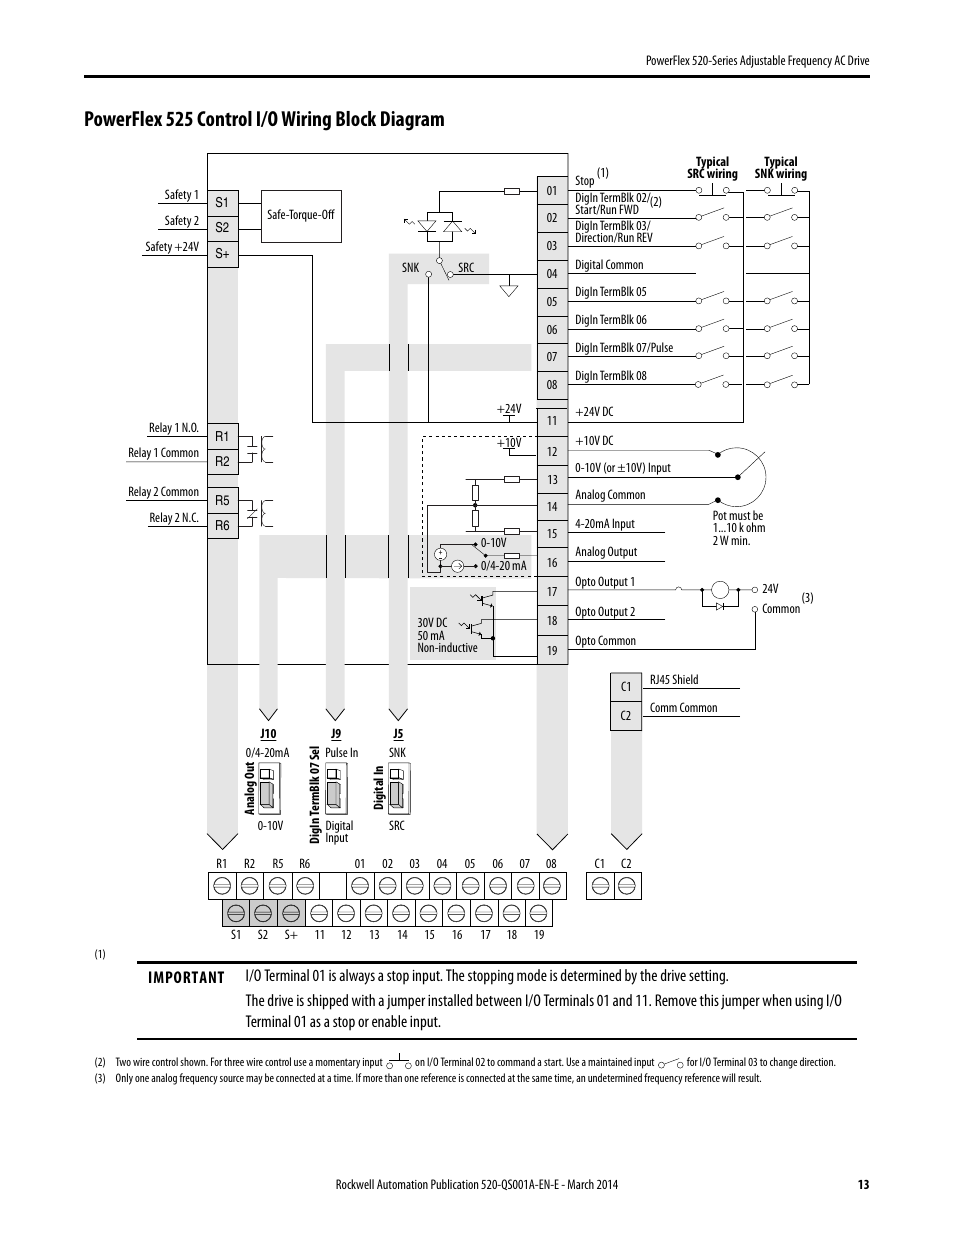 allen bradley powerflex 400 wiring diagram